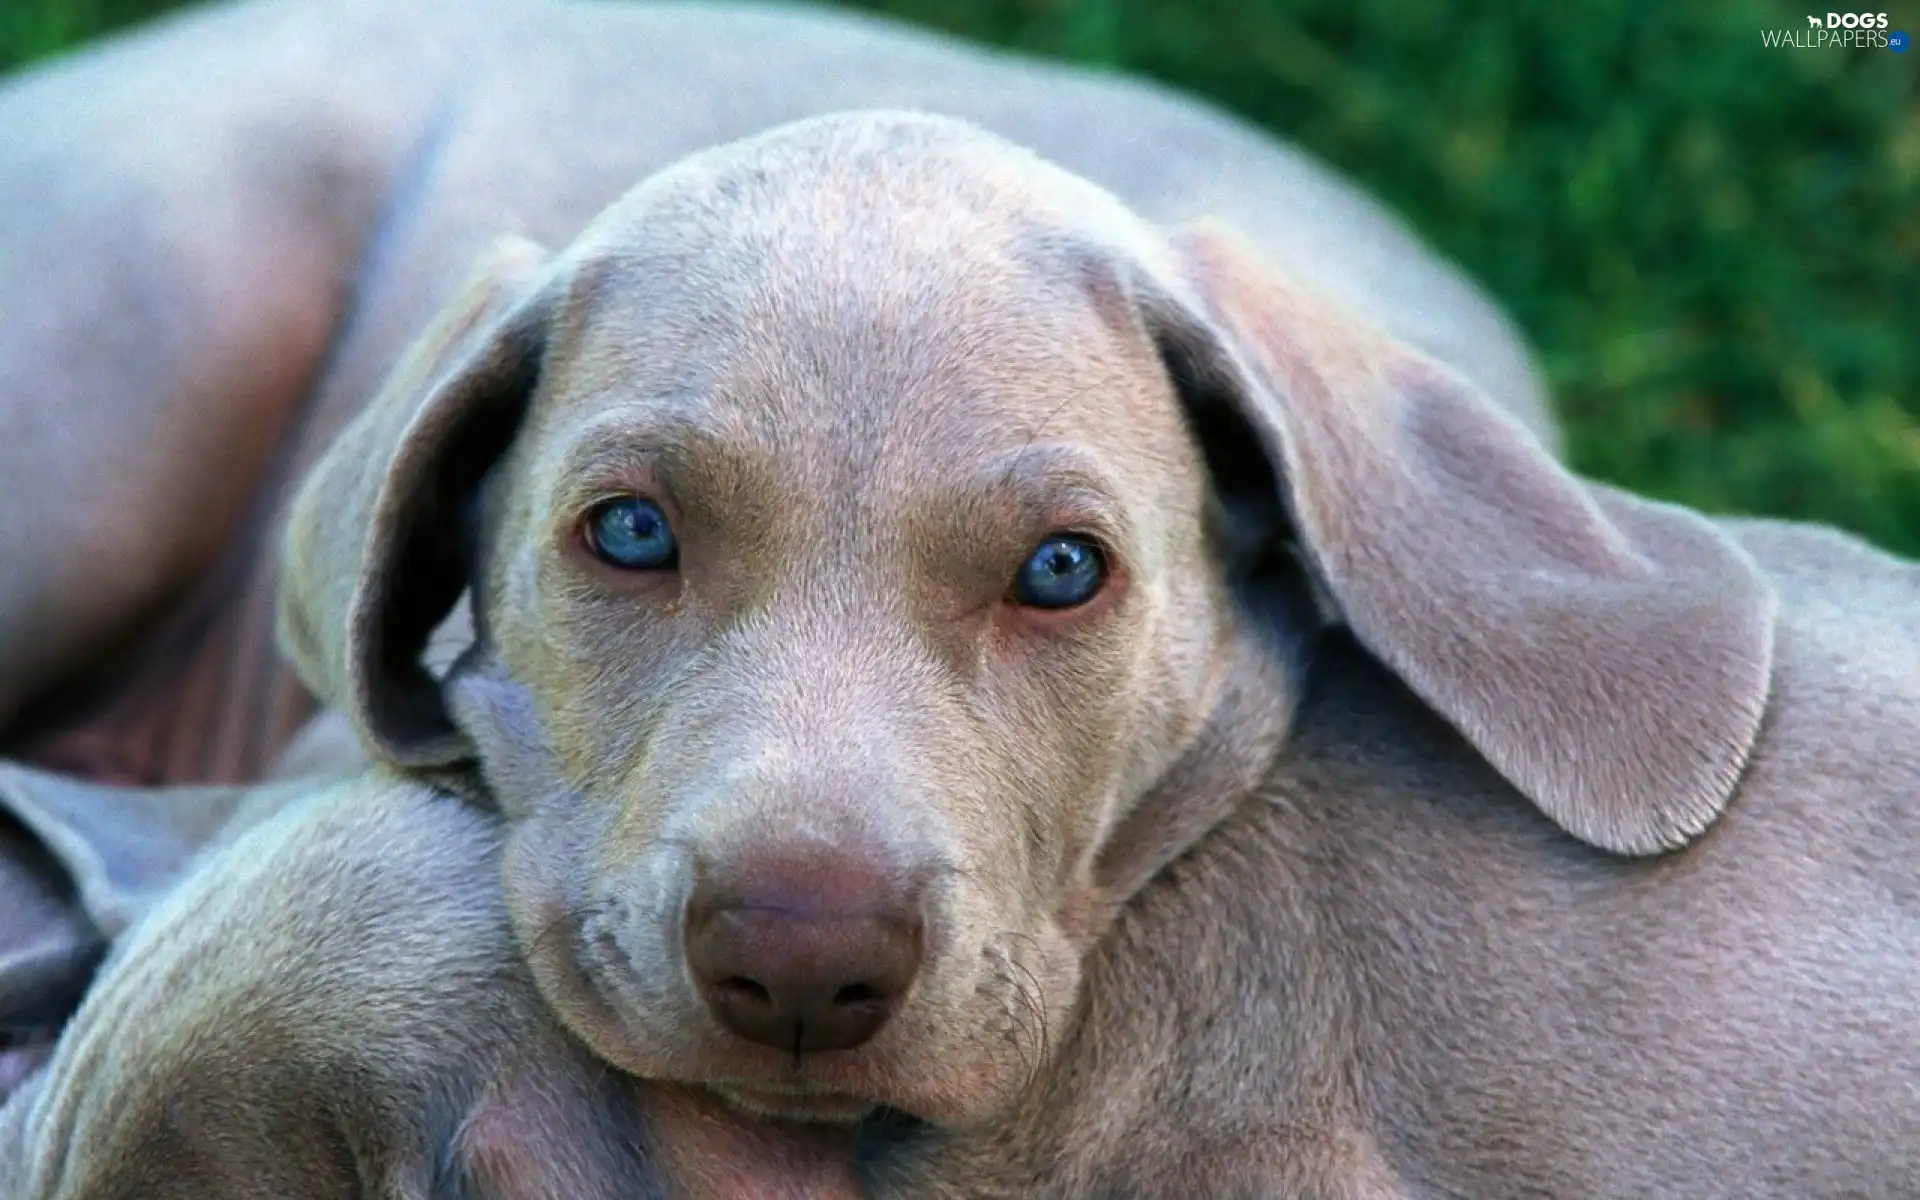 Eyes, Blue, sad, doggy